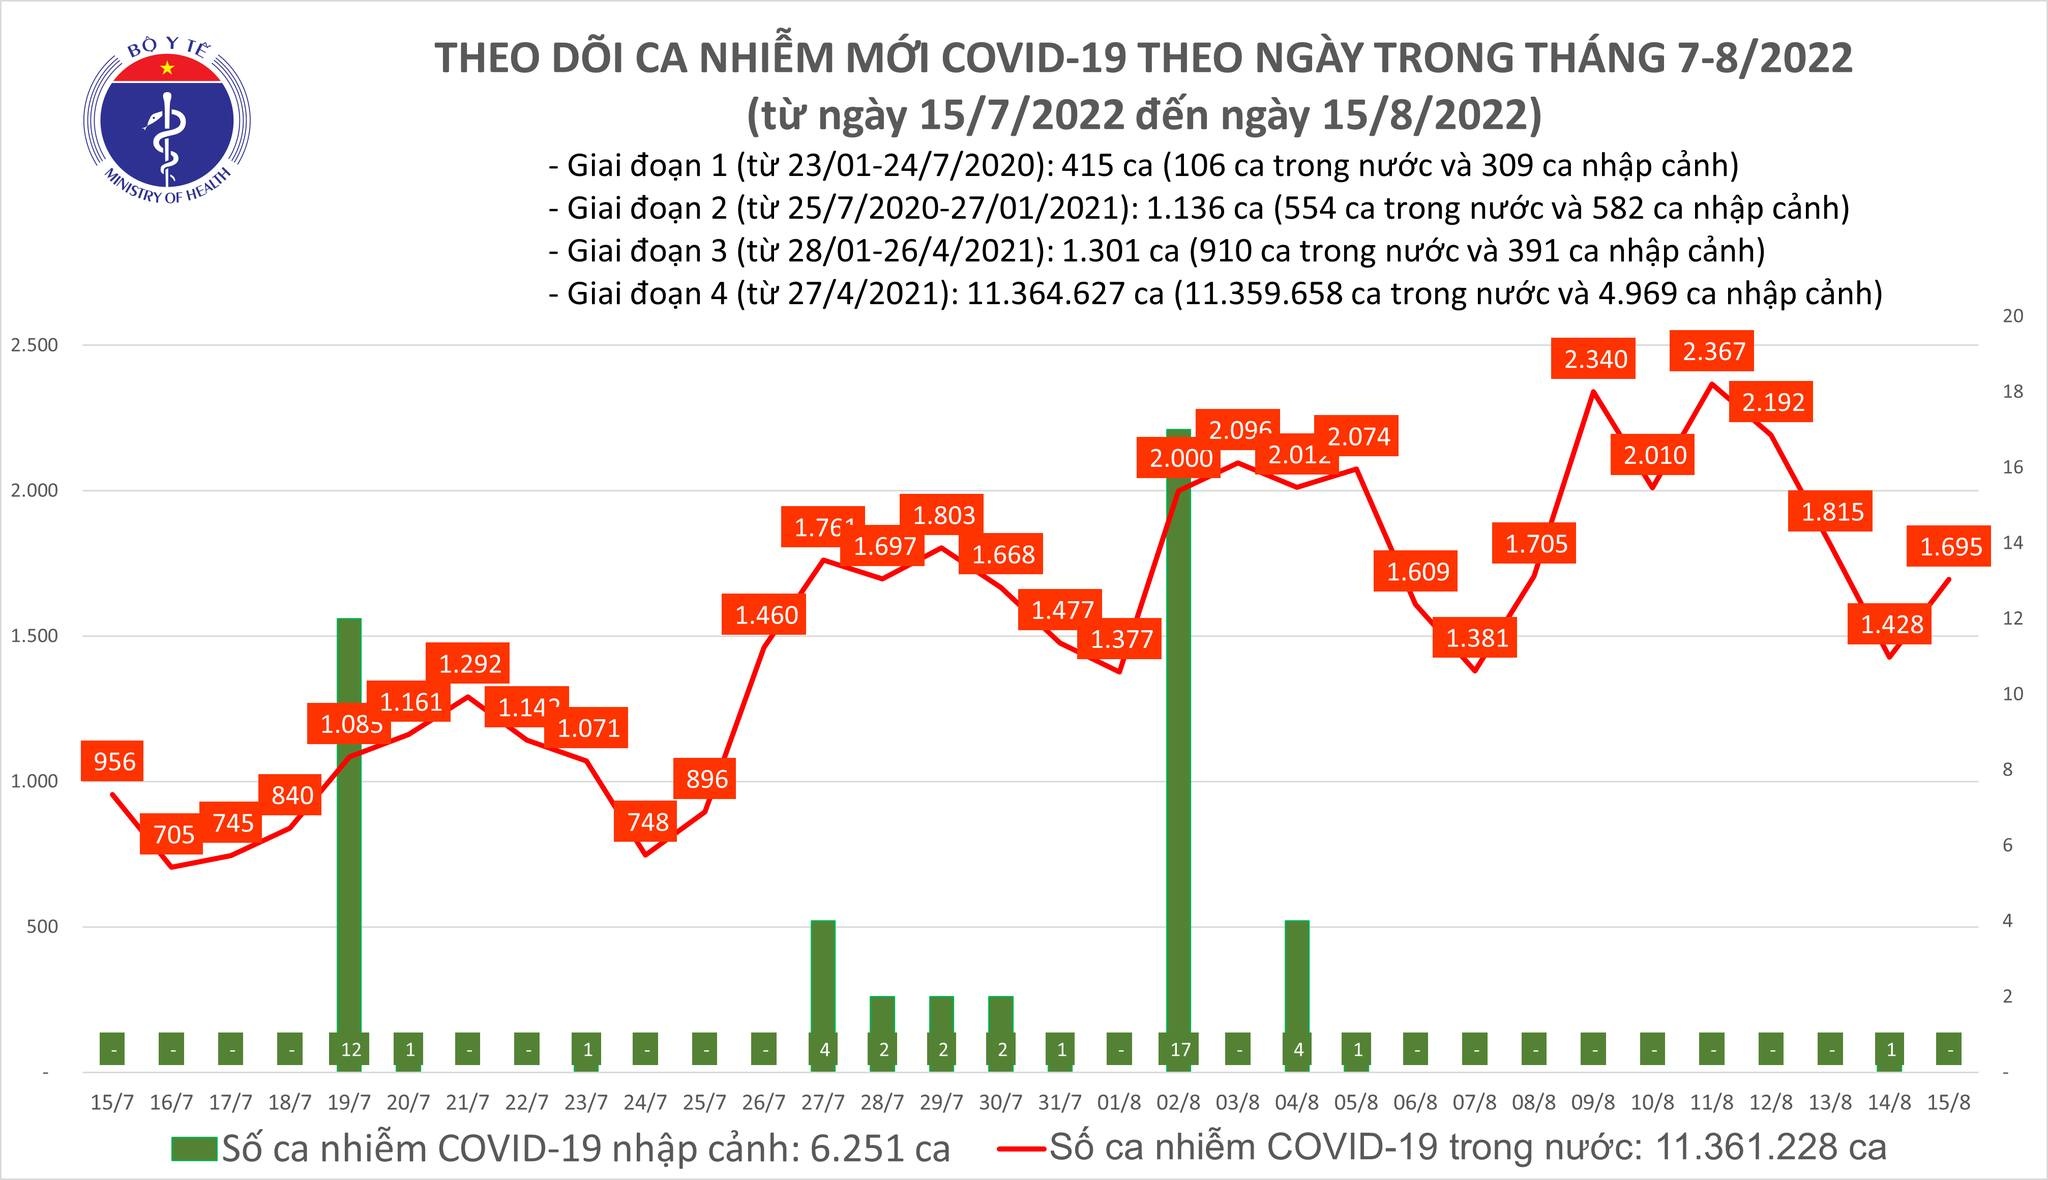 Việt Nam ghi nhận 1.695 ca mắc mới COVID-19 trong ngày 15/8